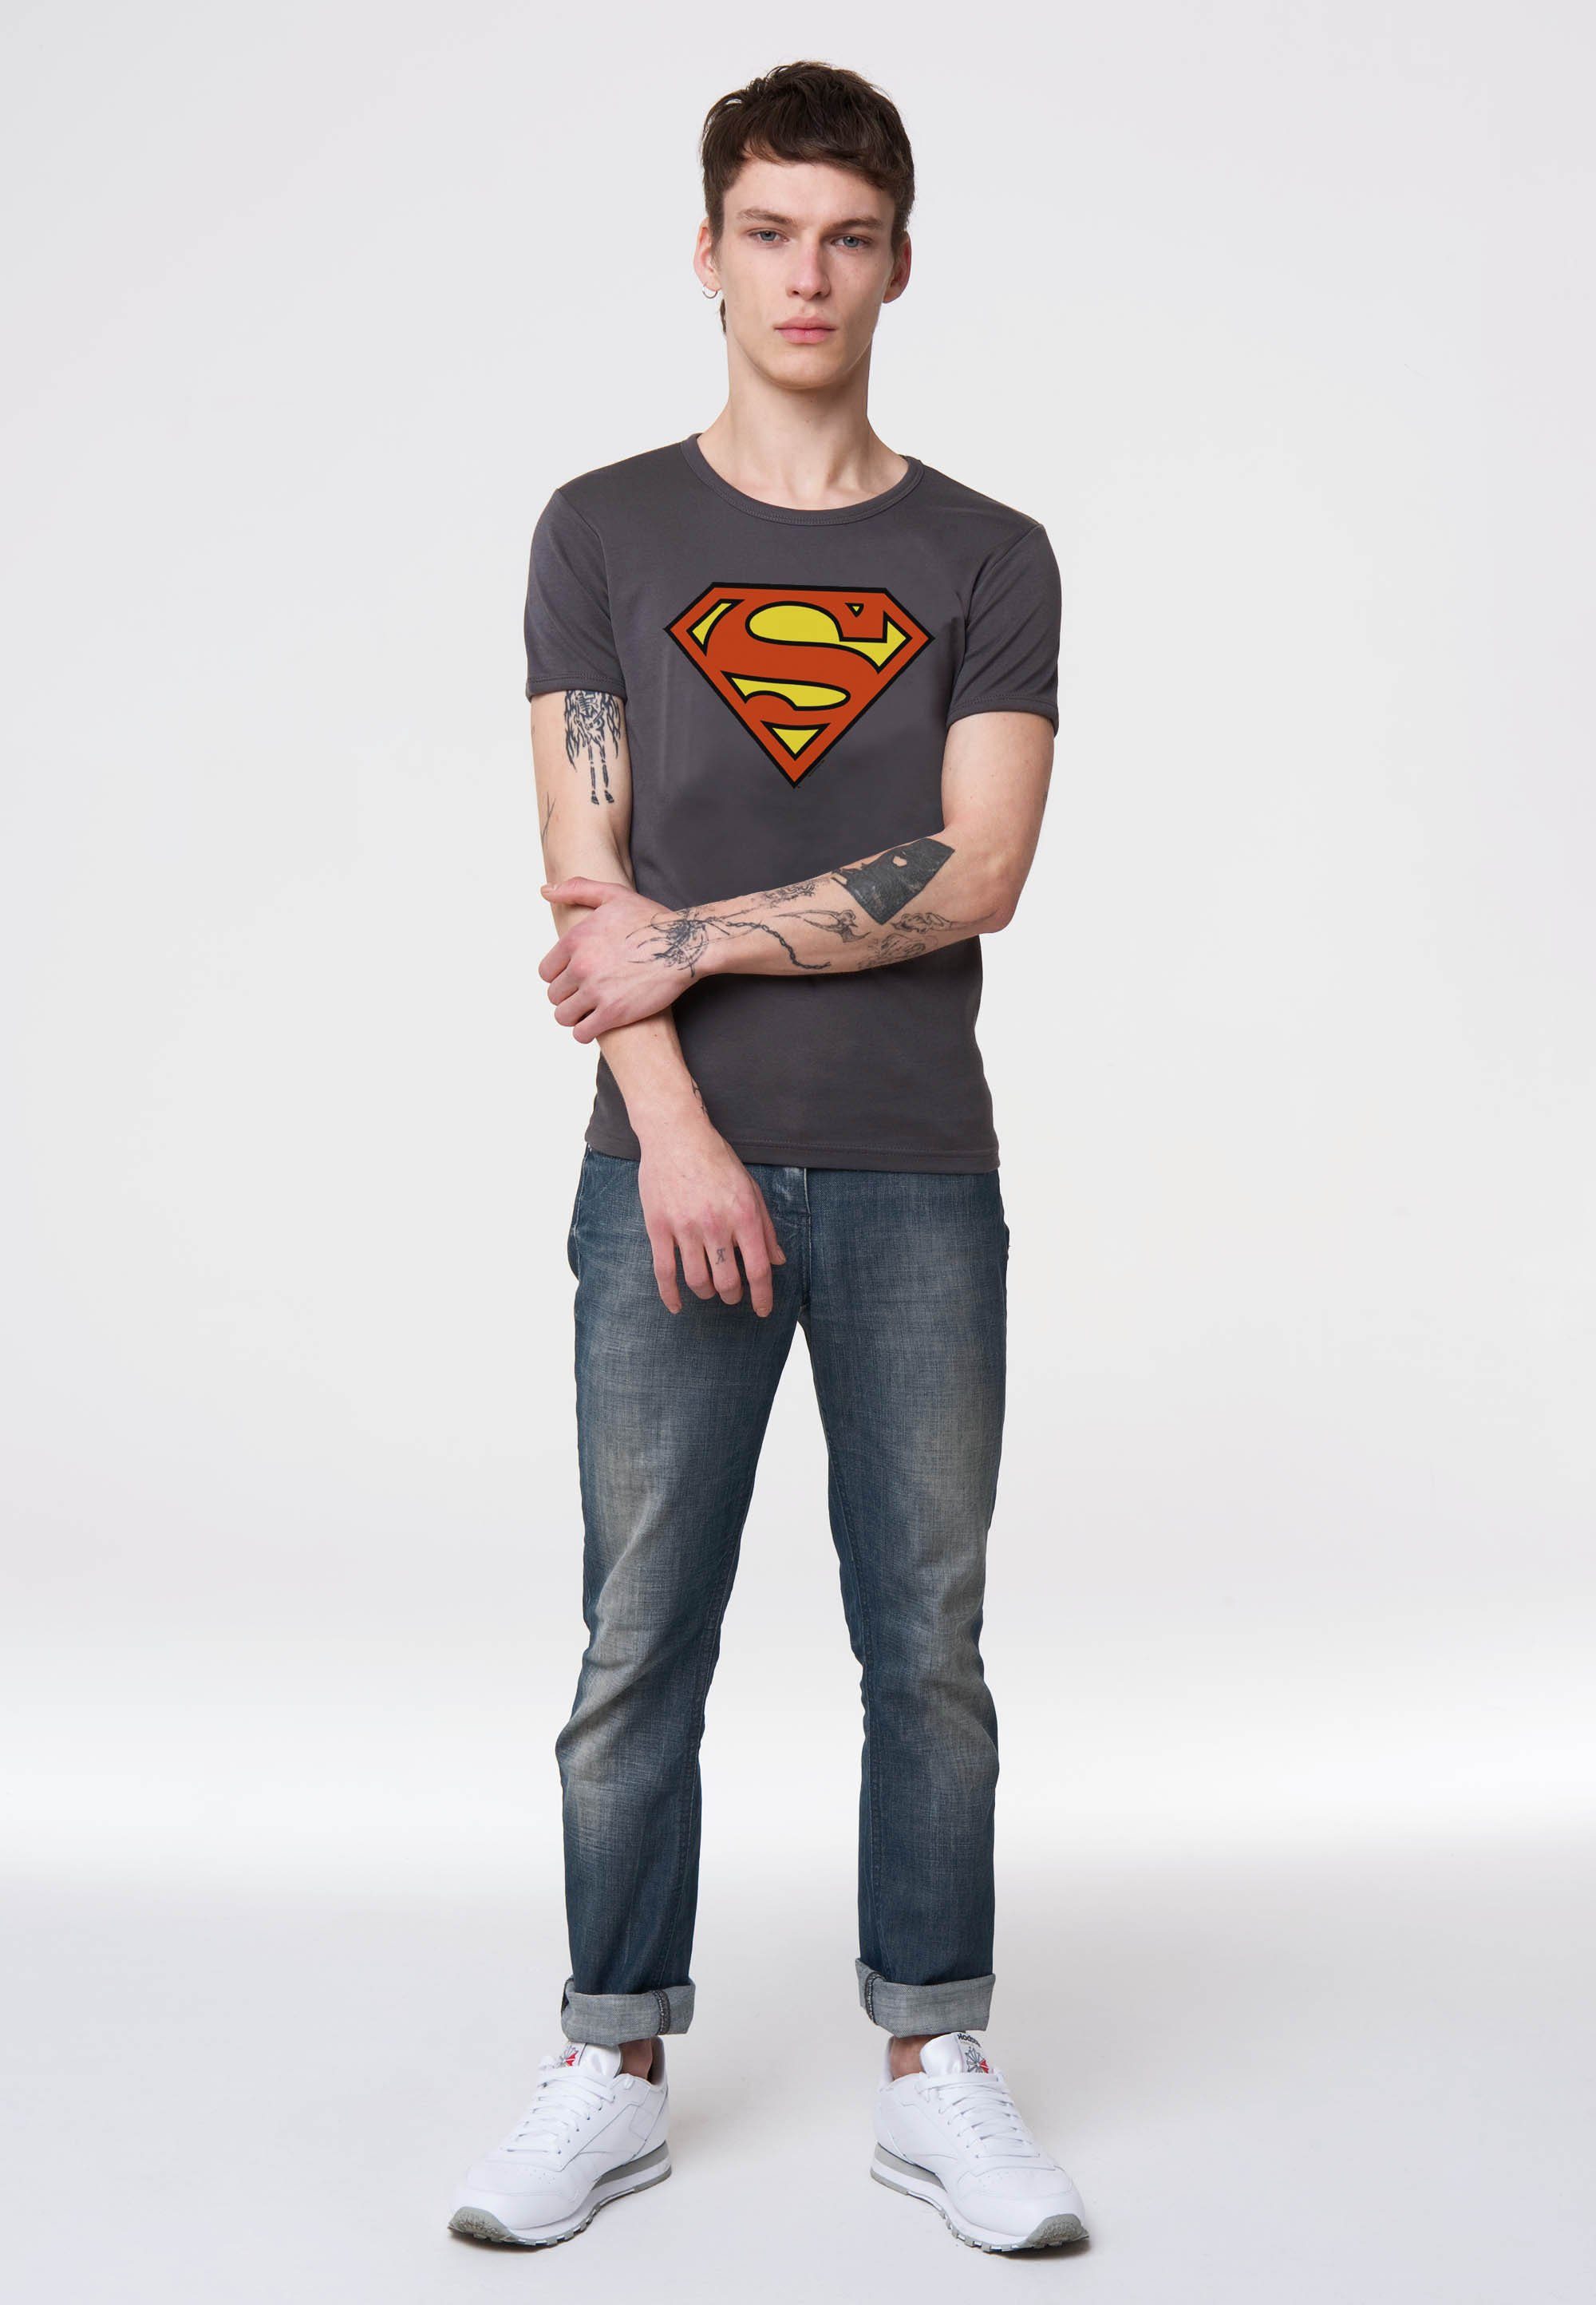 LOGOSHIRT T-Shirt Superman Logo mit trendigem Superhelden-Print,  Aufwendiger und langlebiger Siebdruck mit Superman-Logo